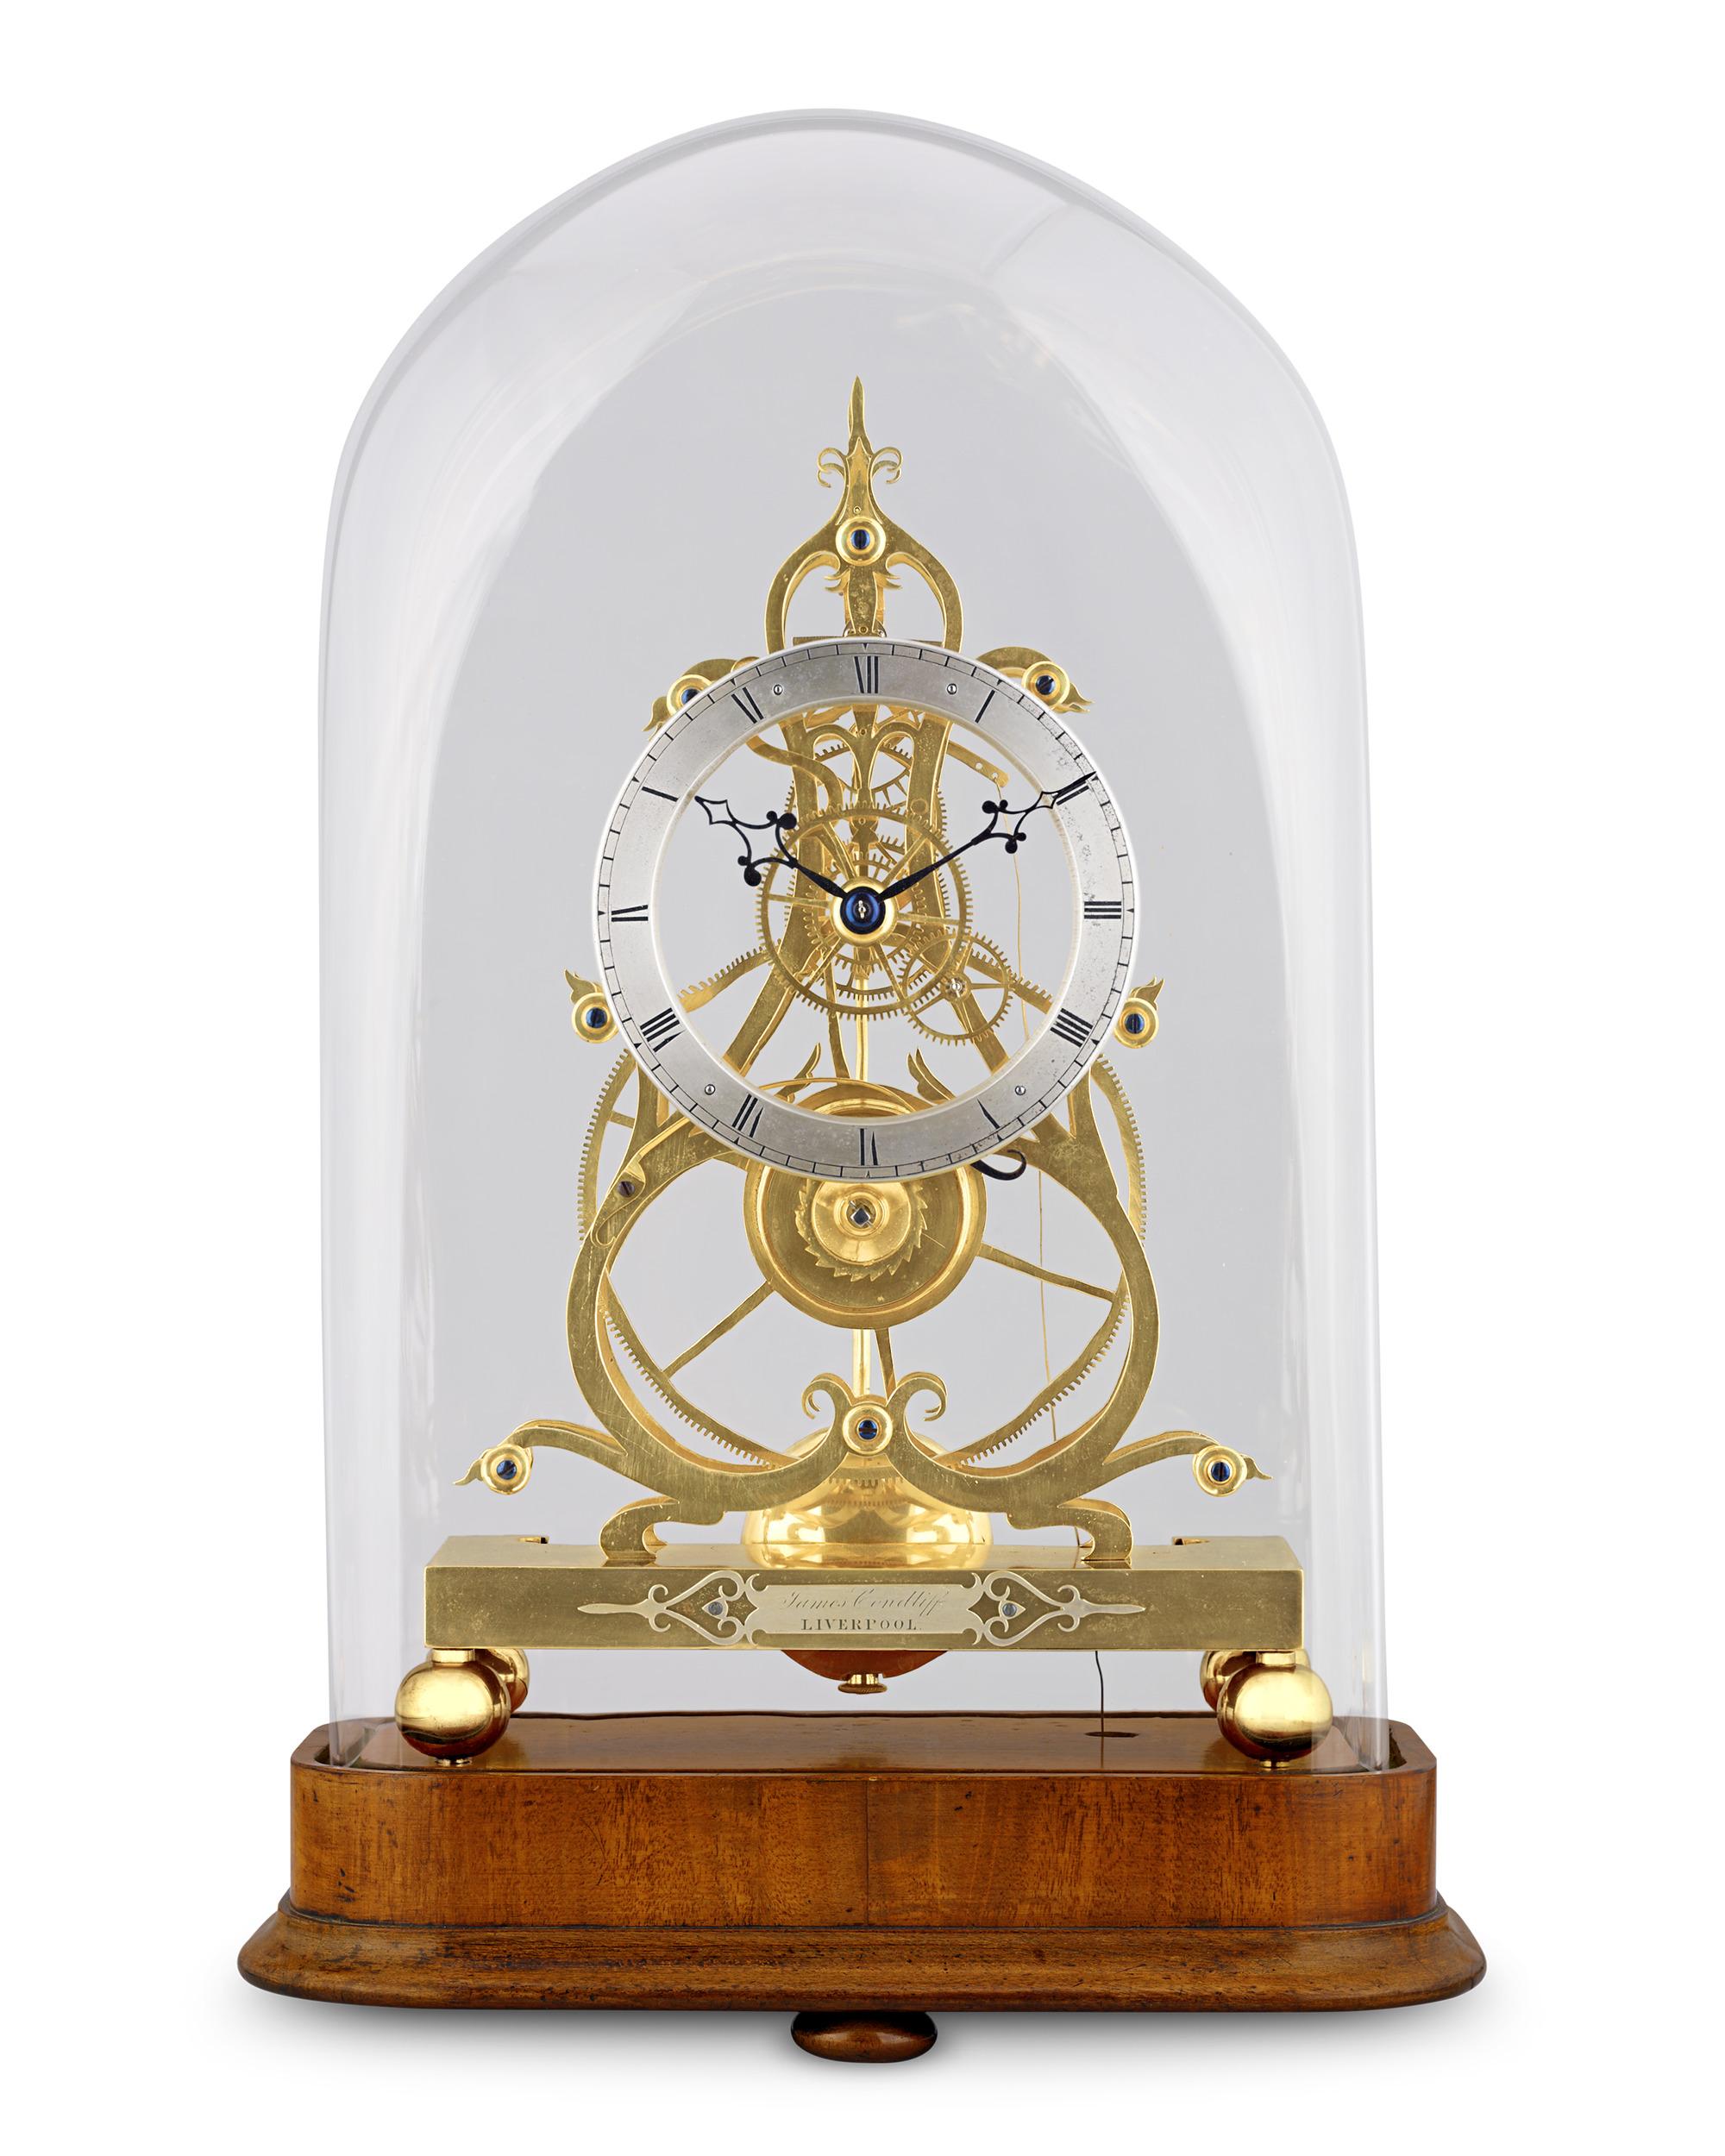 Bei diesem außergewöhnlichen Zeitmesser handelt es sich um eine skelettierte Uhr aus dem viktorianischen Zeitalter, die von James Condliff aus Liverpool, einer Koryphäe der britischen Uhrmacherkunst des 19. Condliff zeichnete sich durch seine